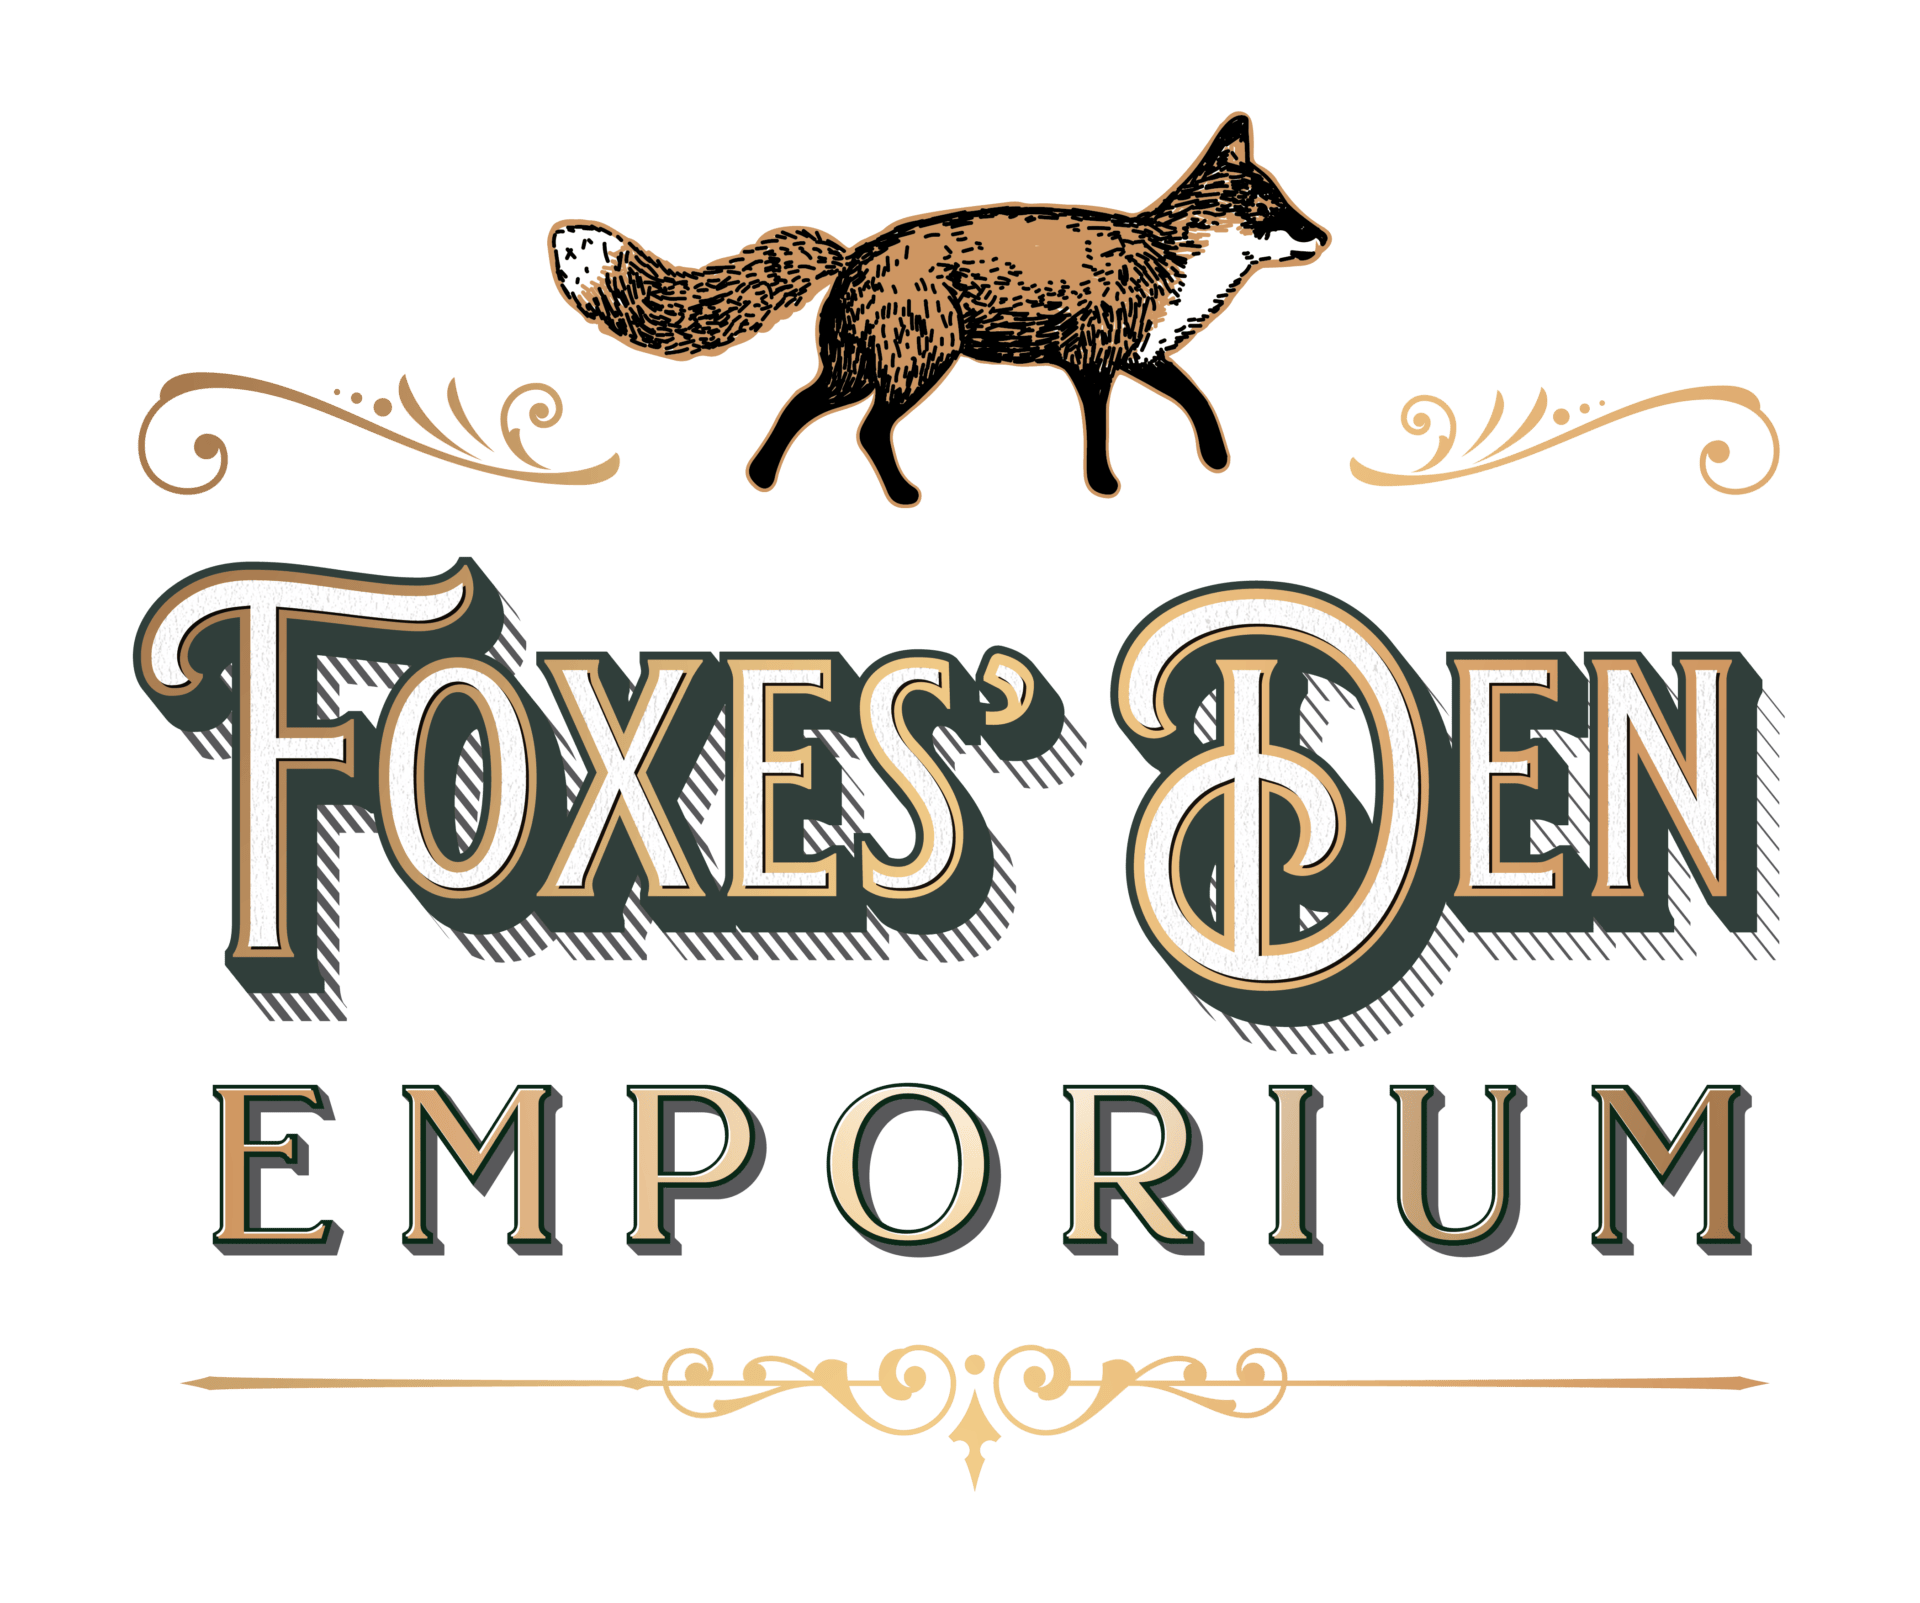 The Foxes Den Emporium